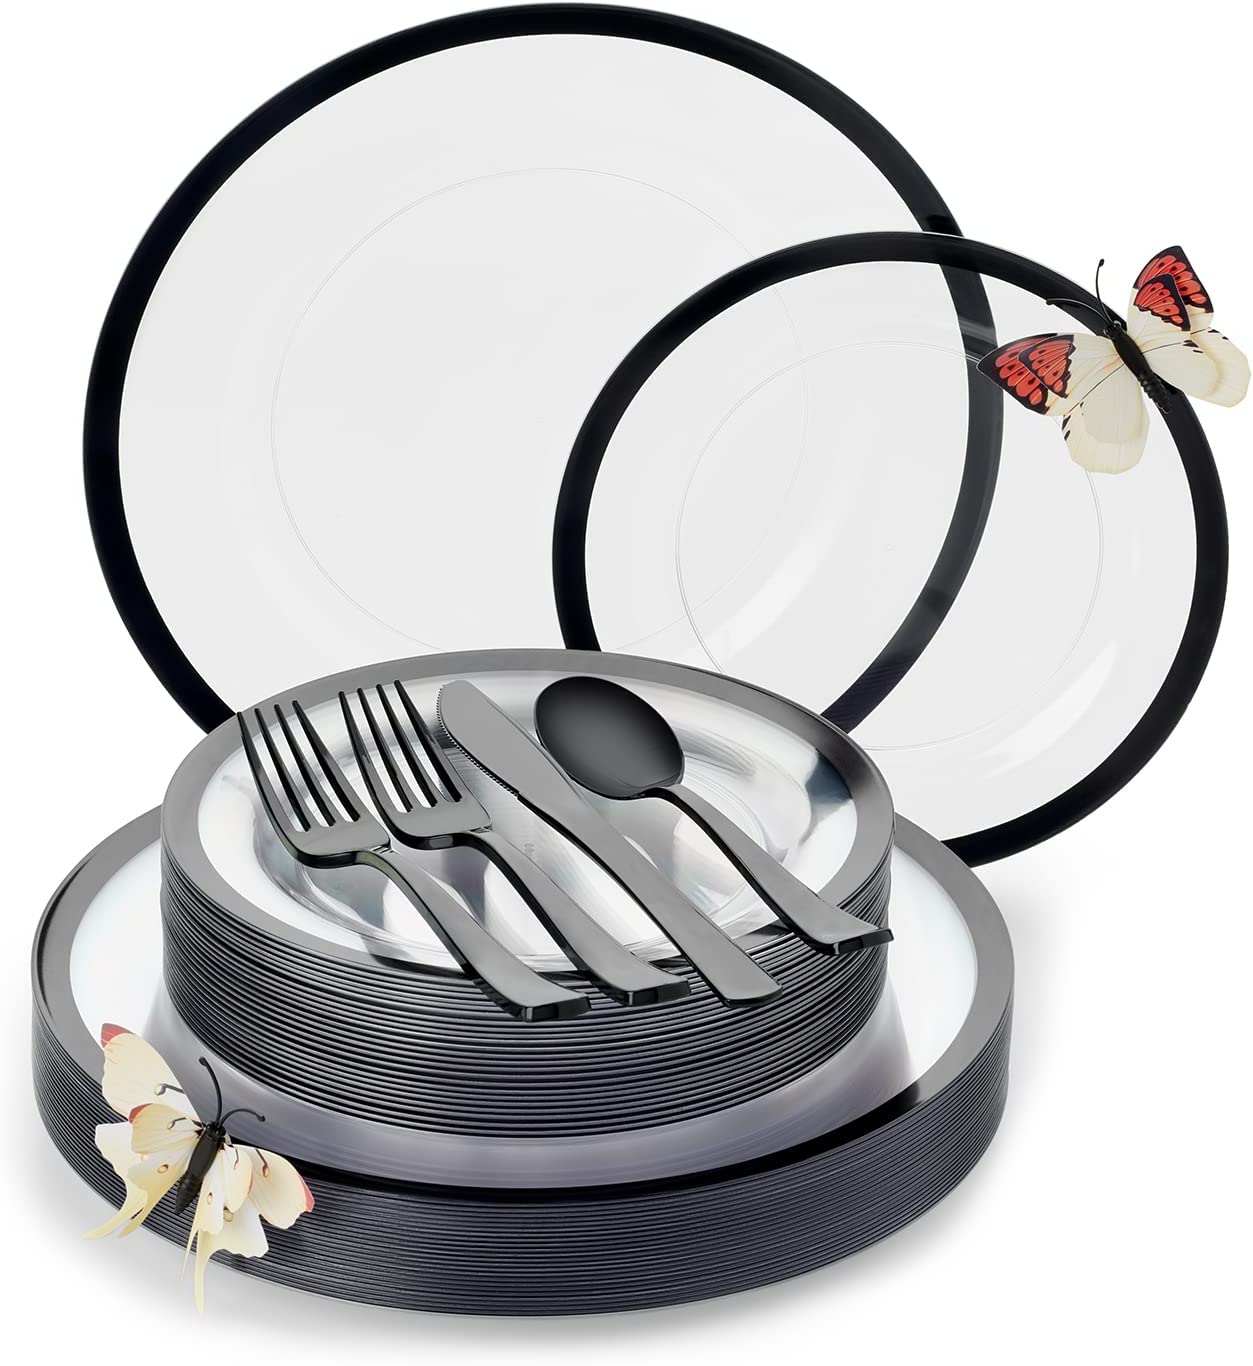 Disposable Clear Plastic Plates with Black Rim Set 150 Pcs with Bonus 3D Butterflies